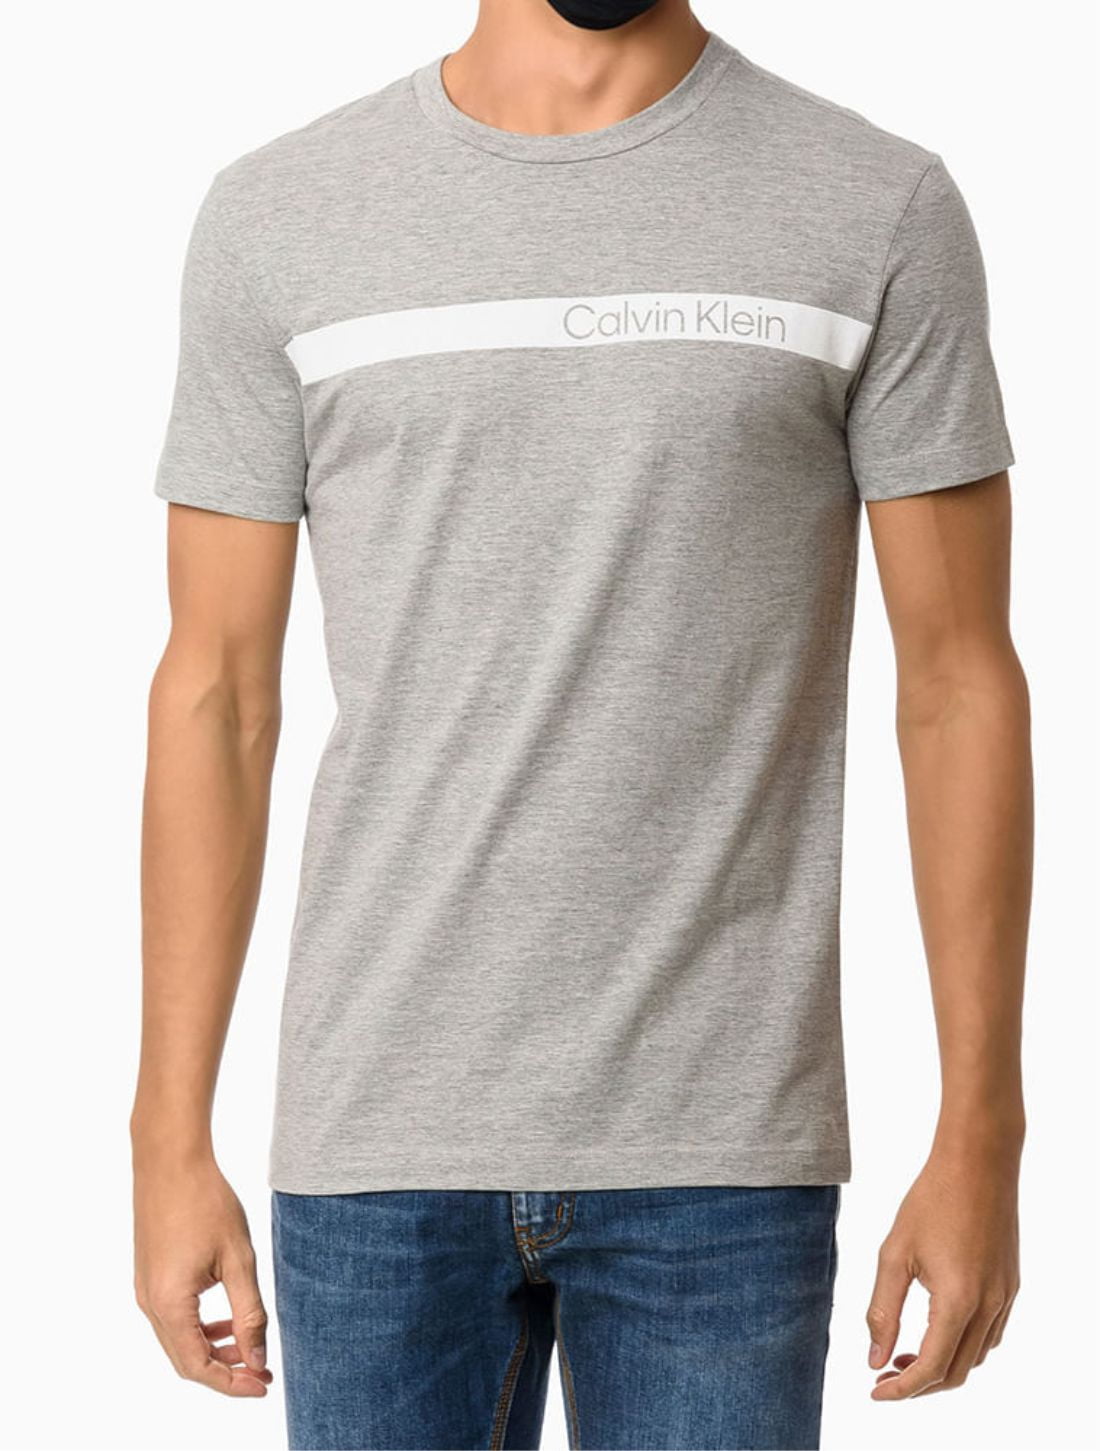 Camiseta Calvin Klein logo espaçado